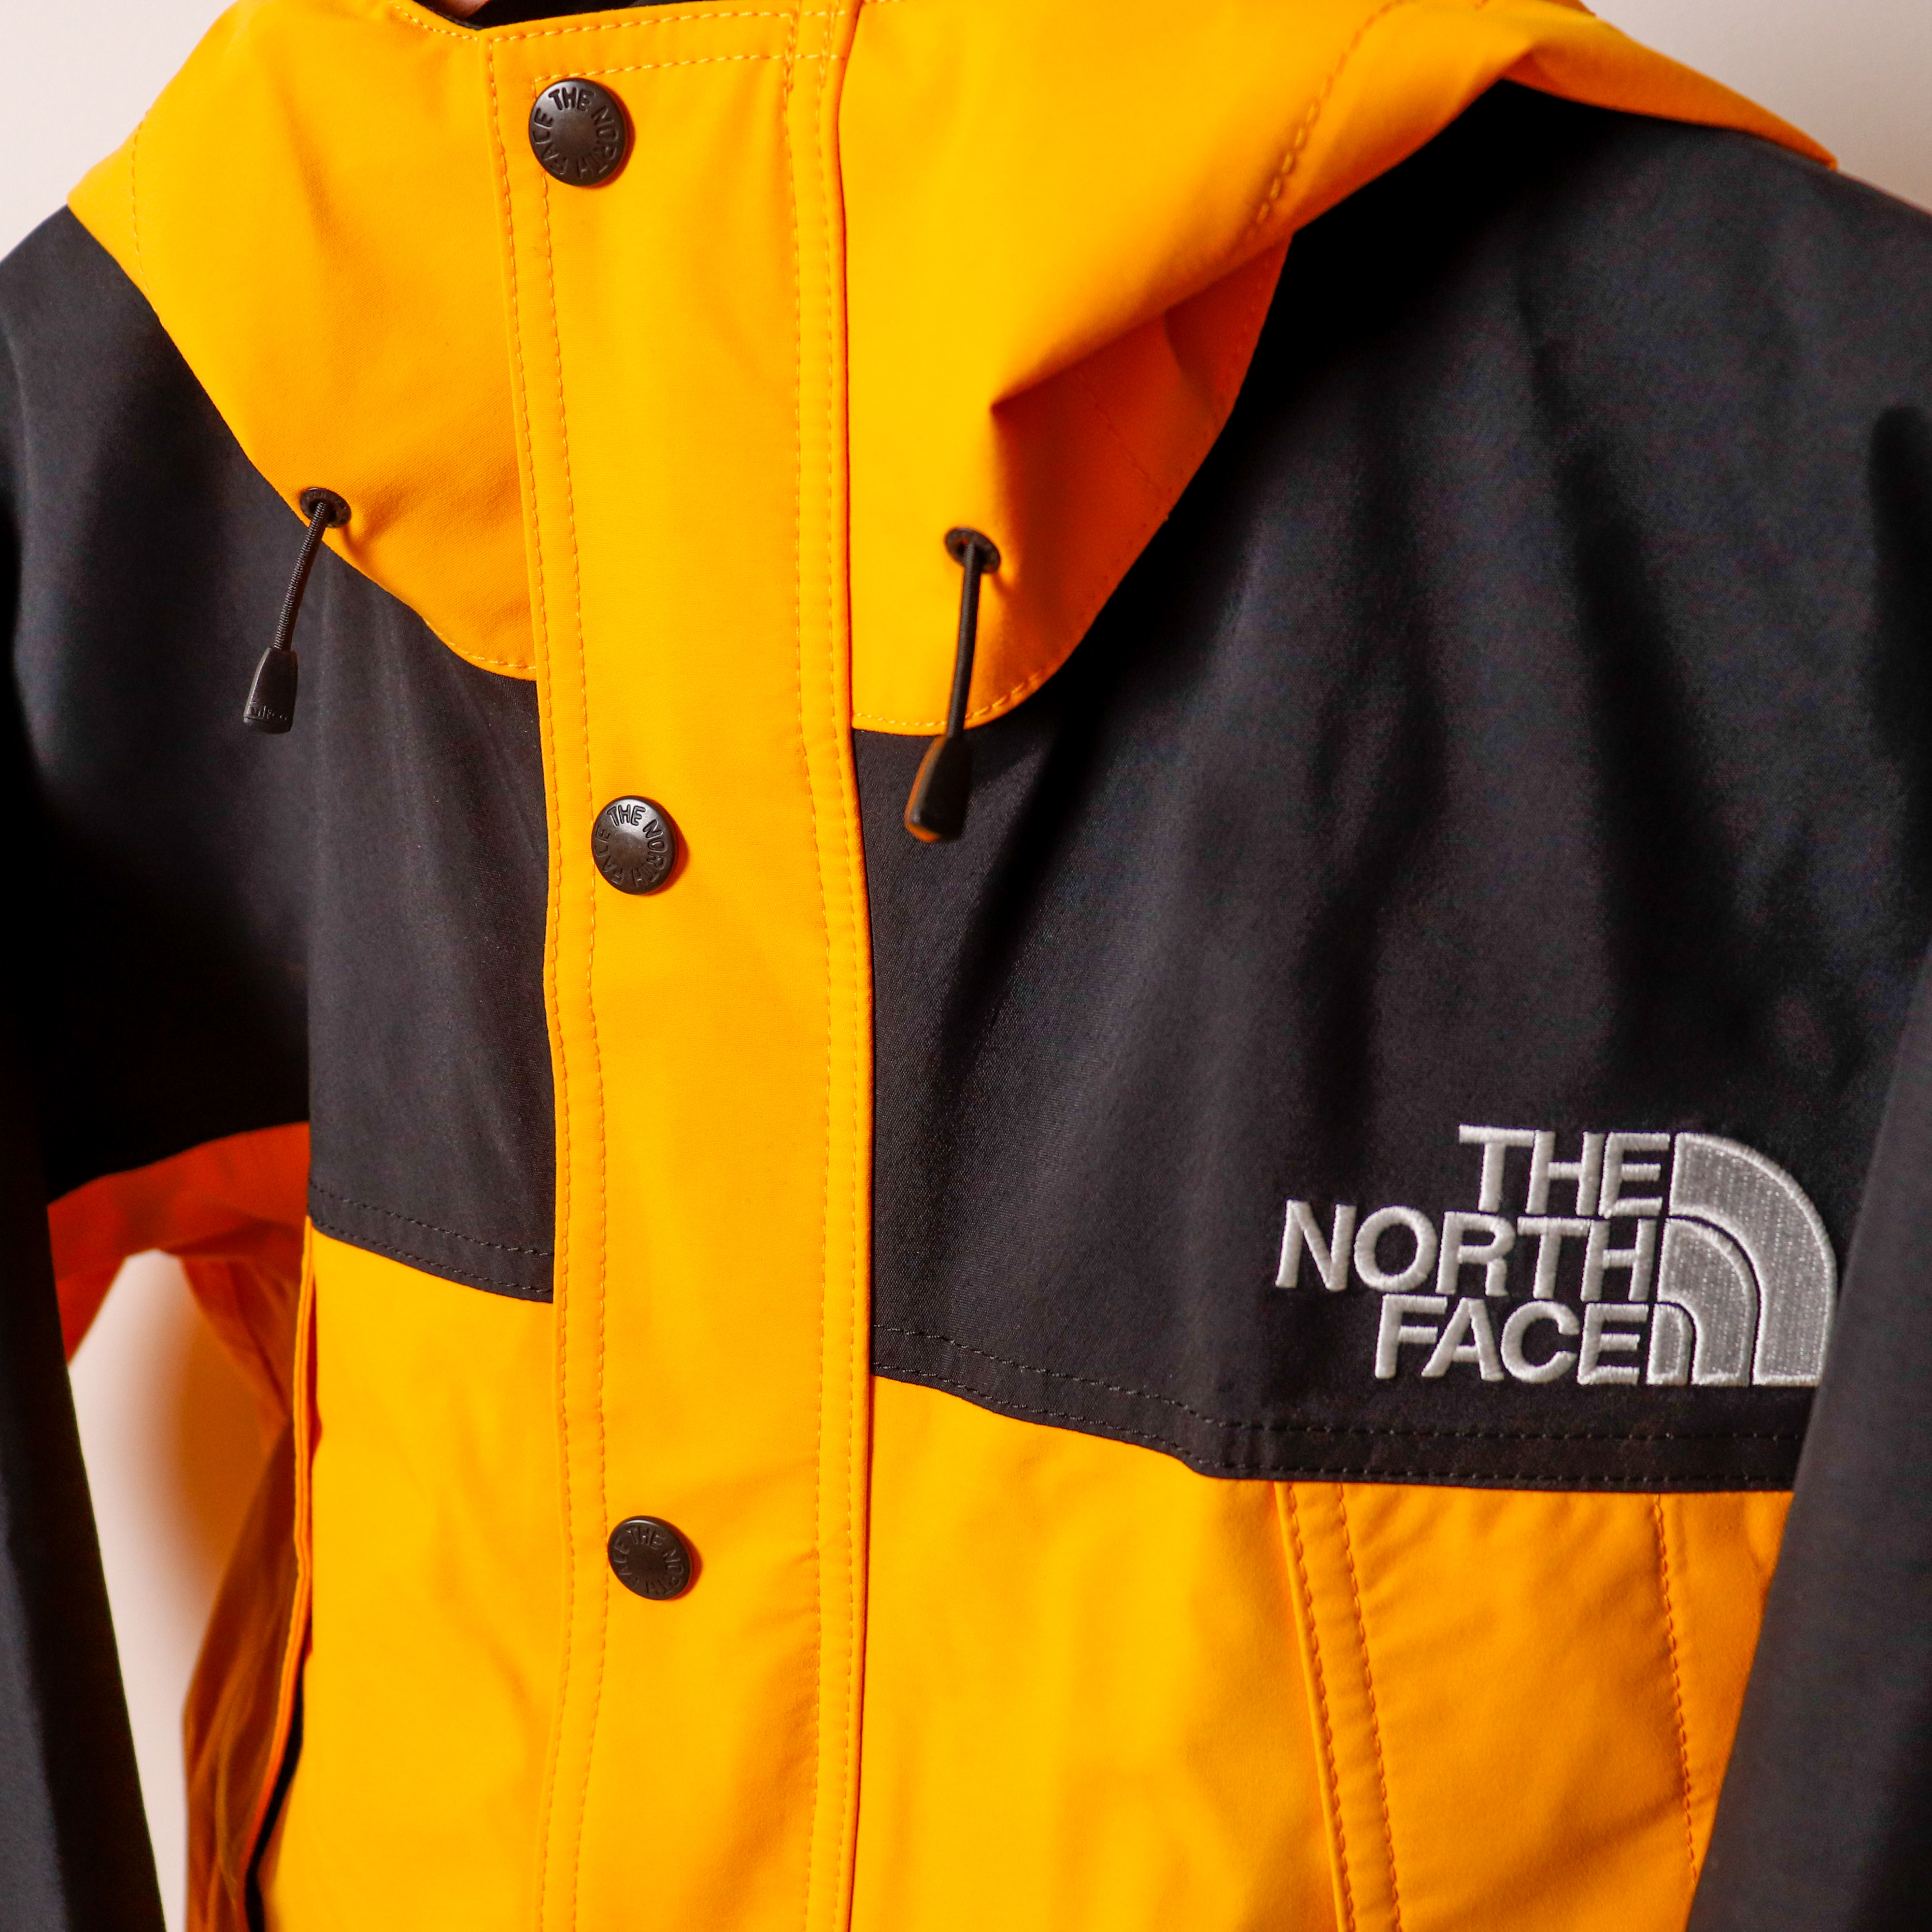 The North Face フューチャライトジャケット サミット ゴールド-